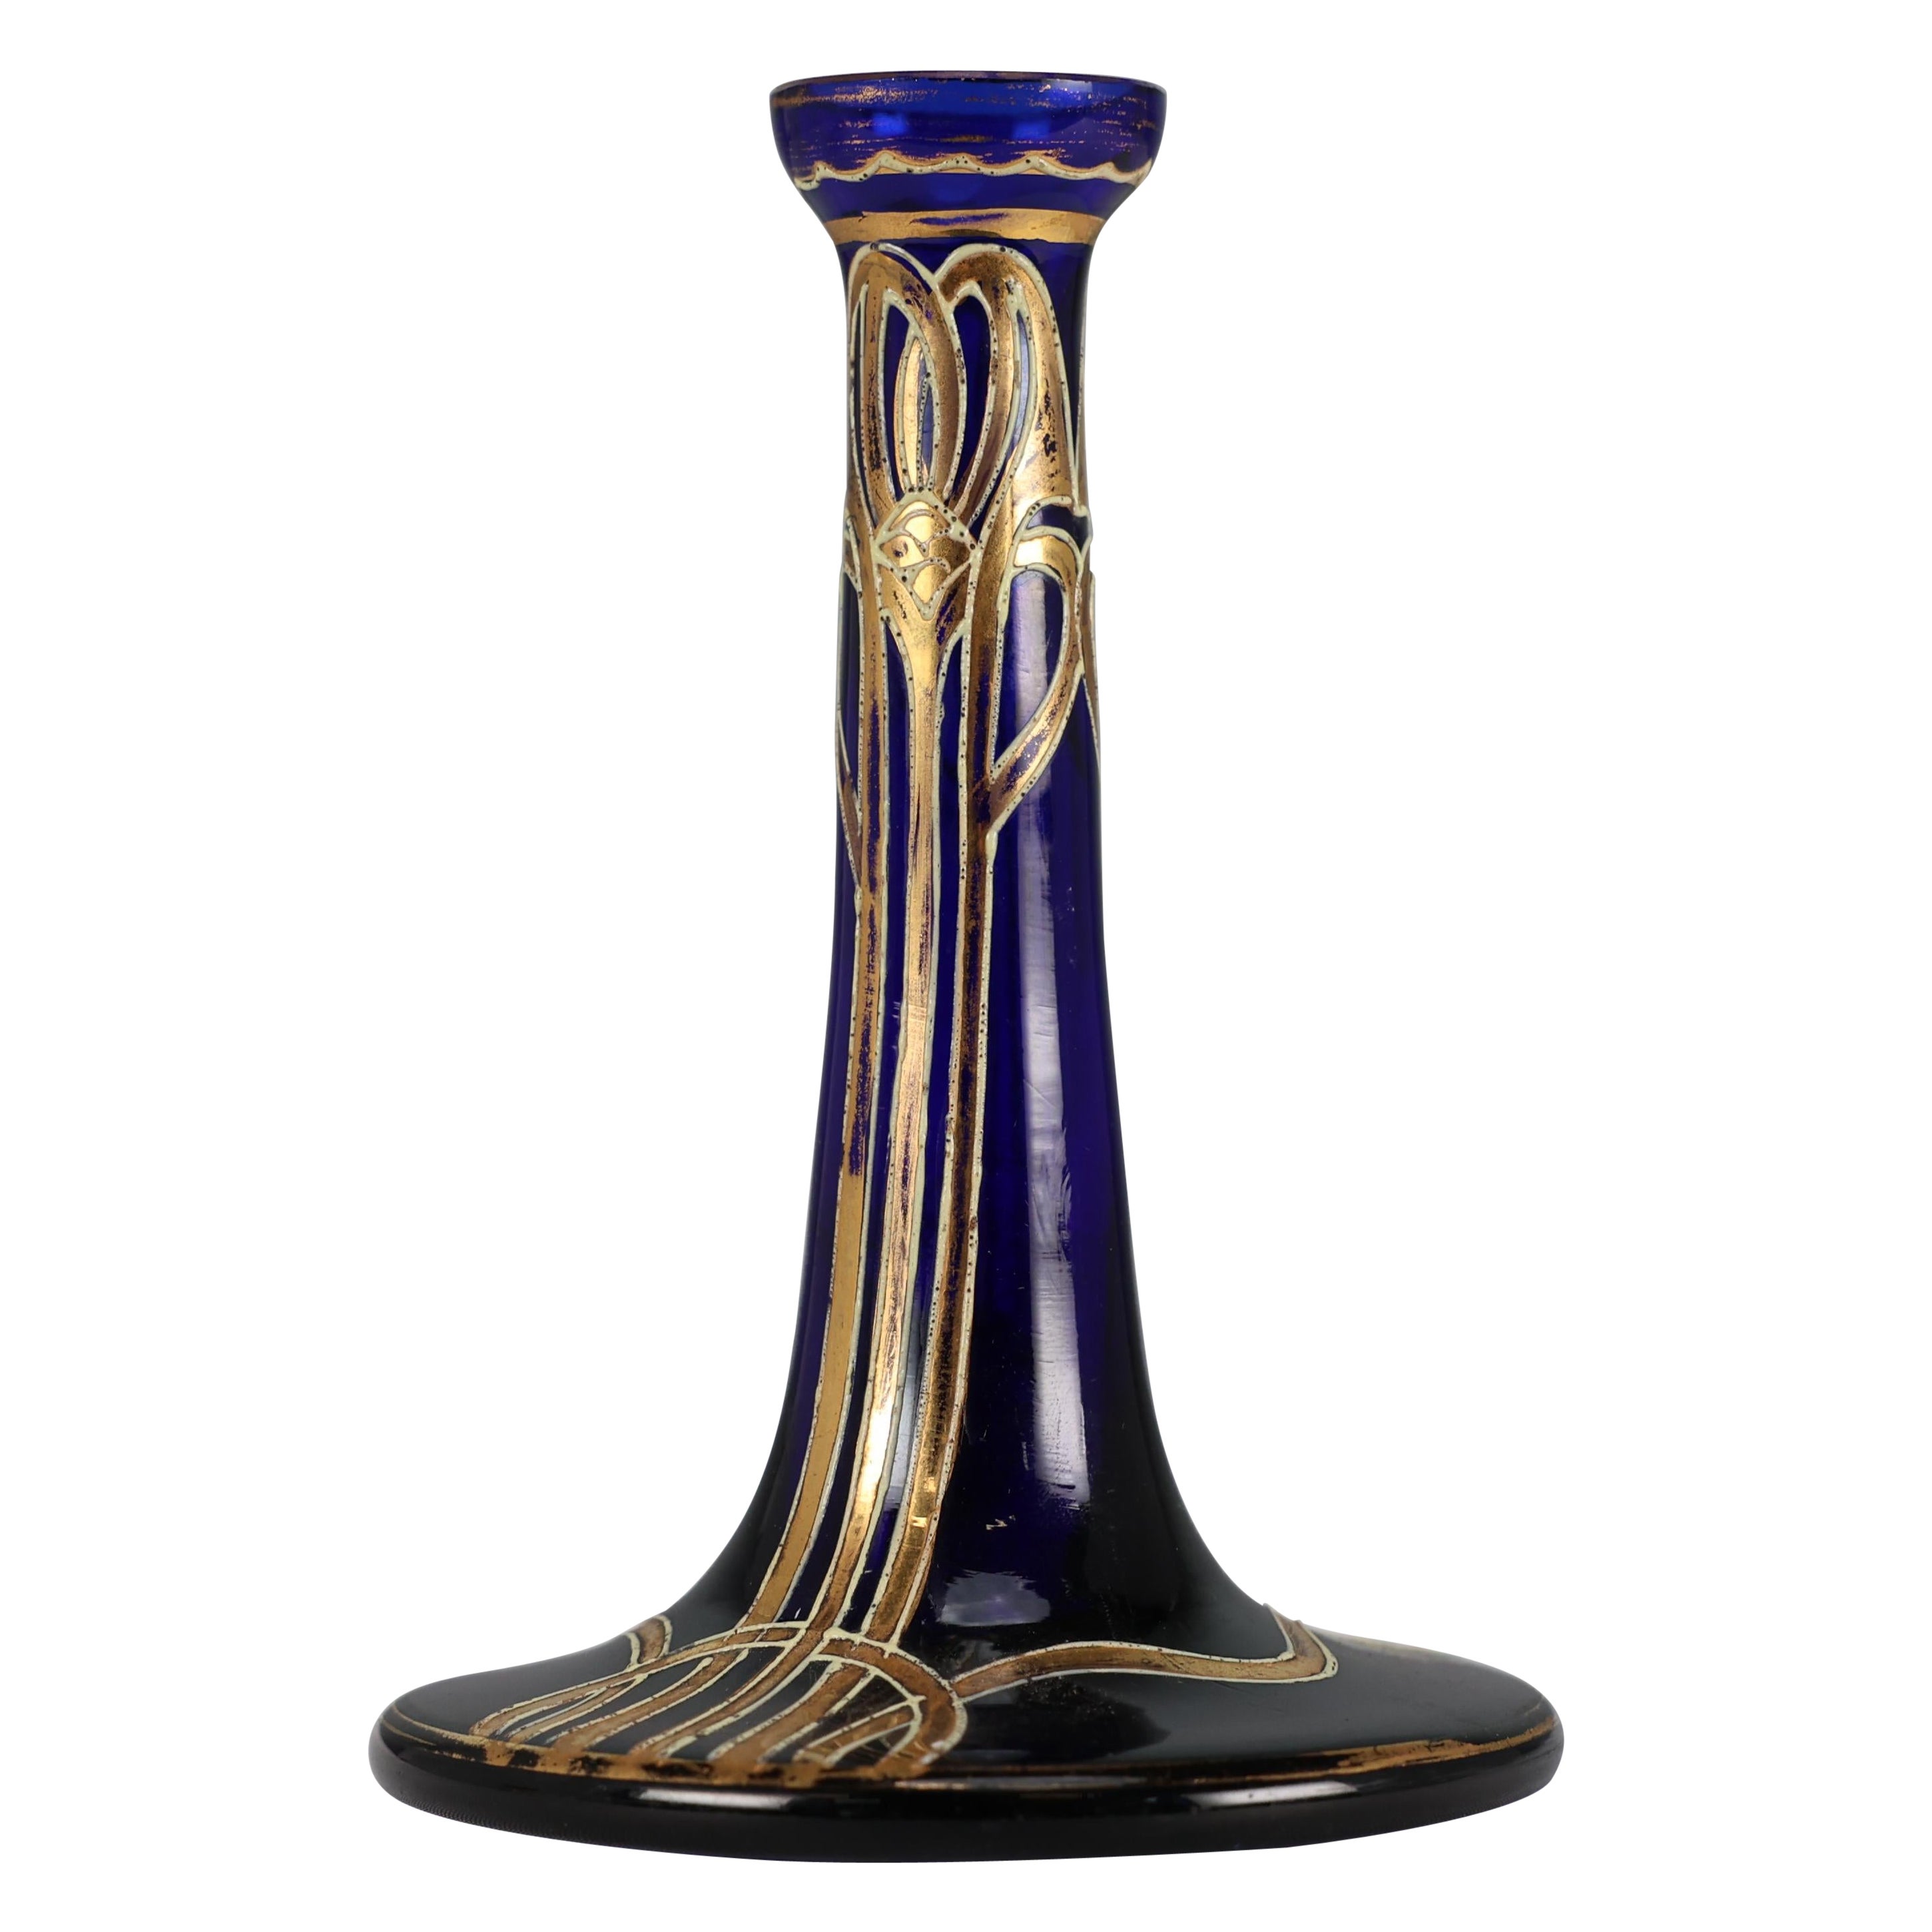 A Bohemian Austrian Art Nouveau gilded glass flower vase in Bristol blue colour.